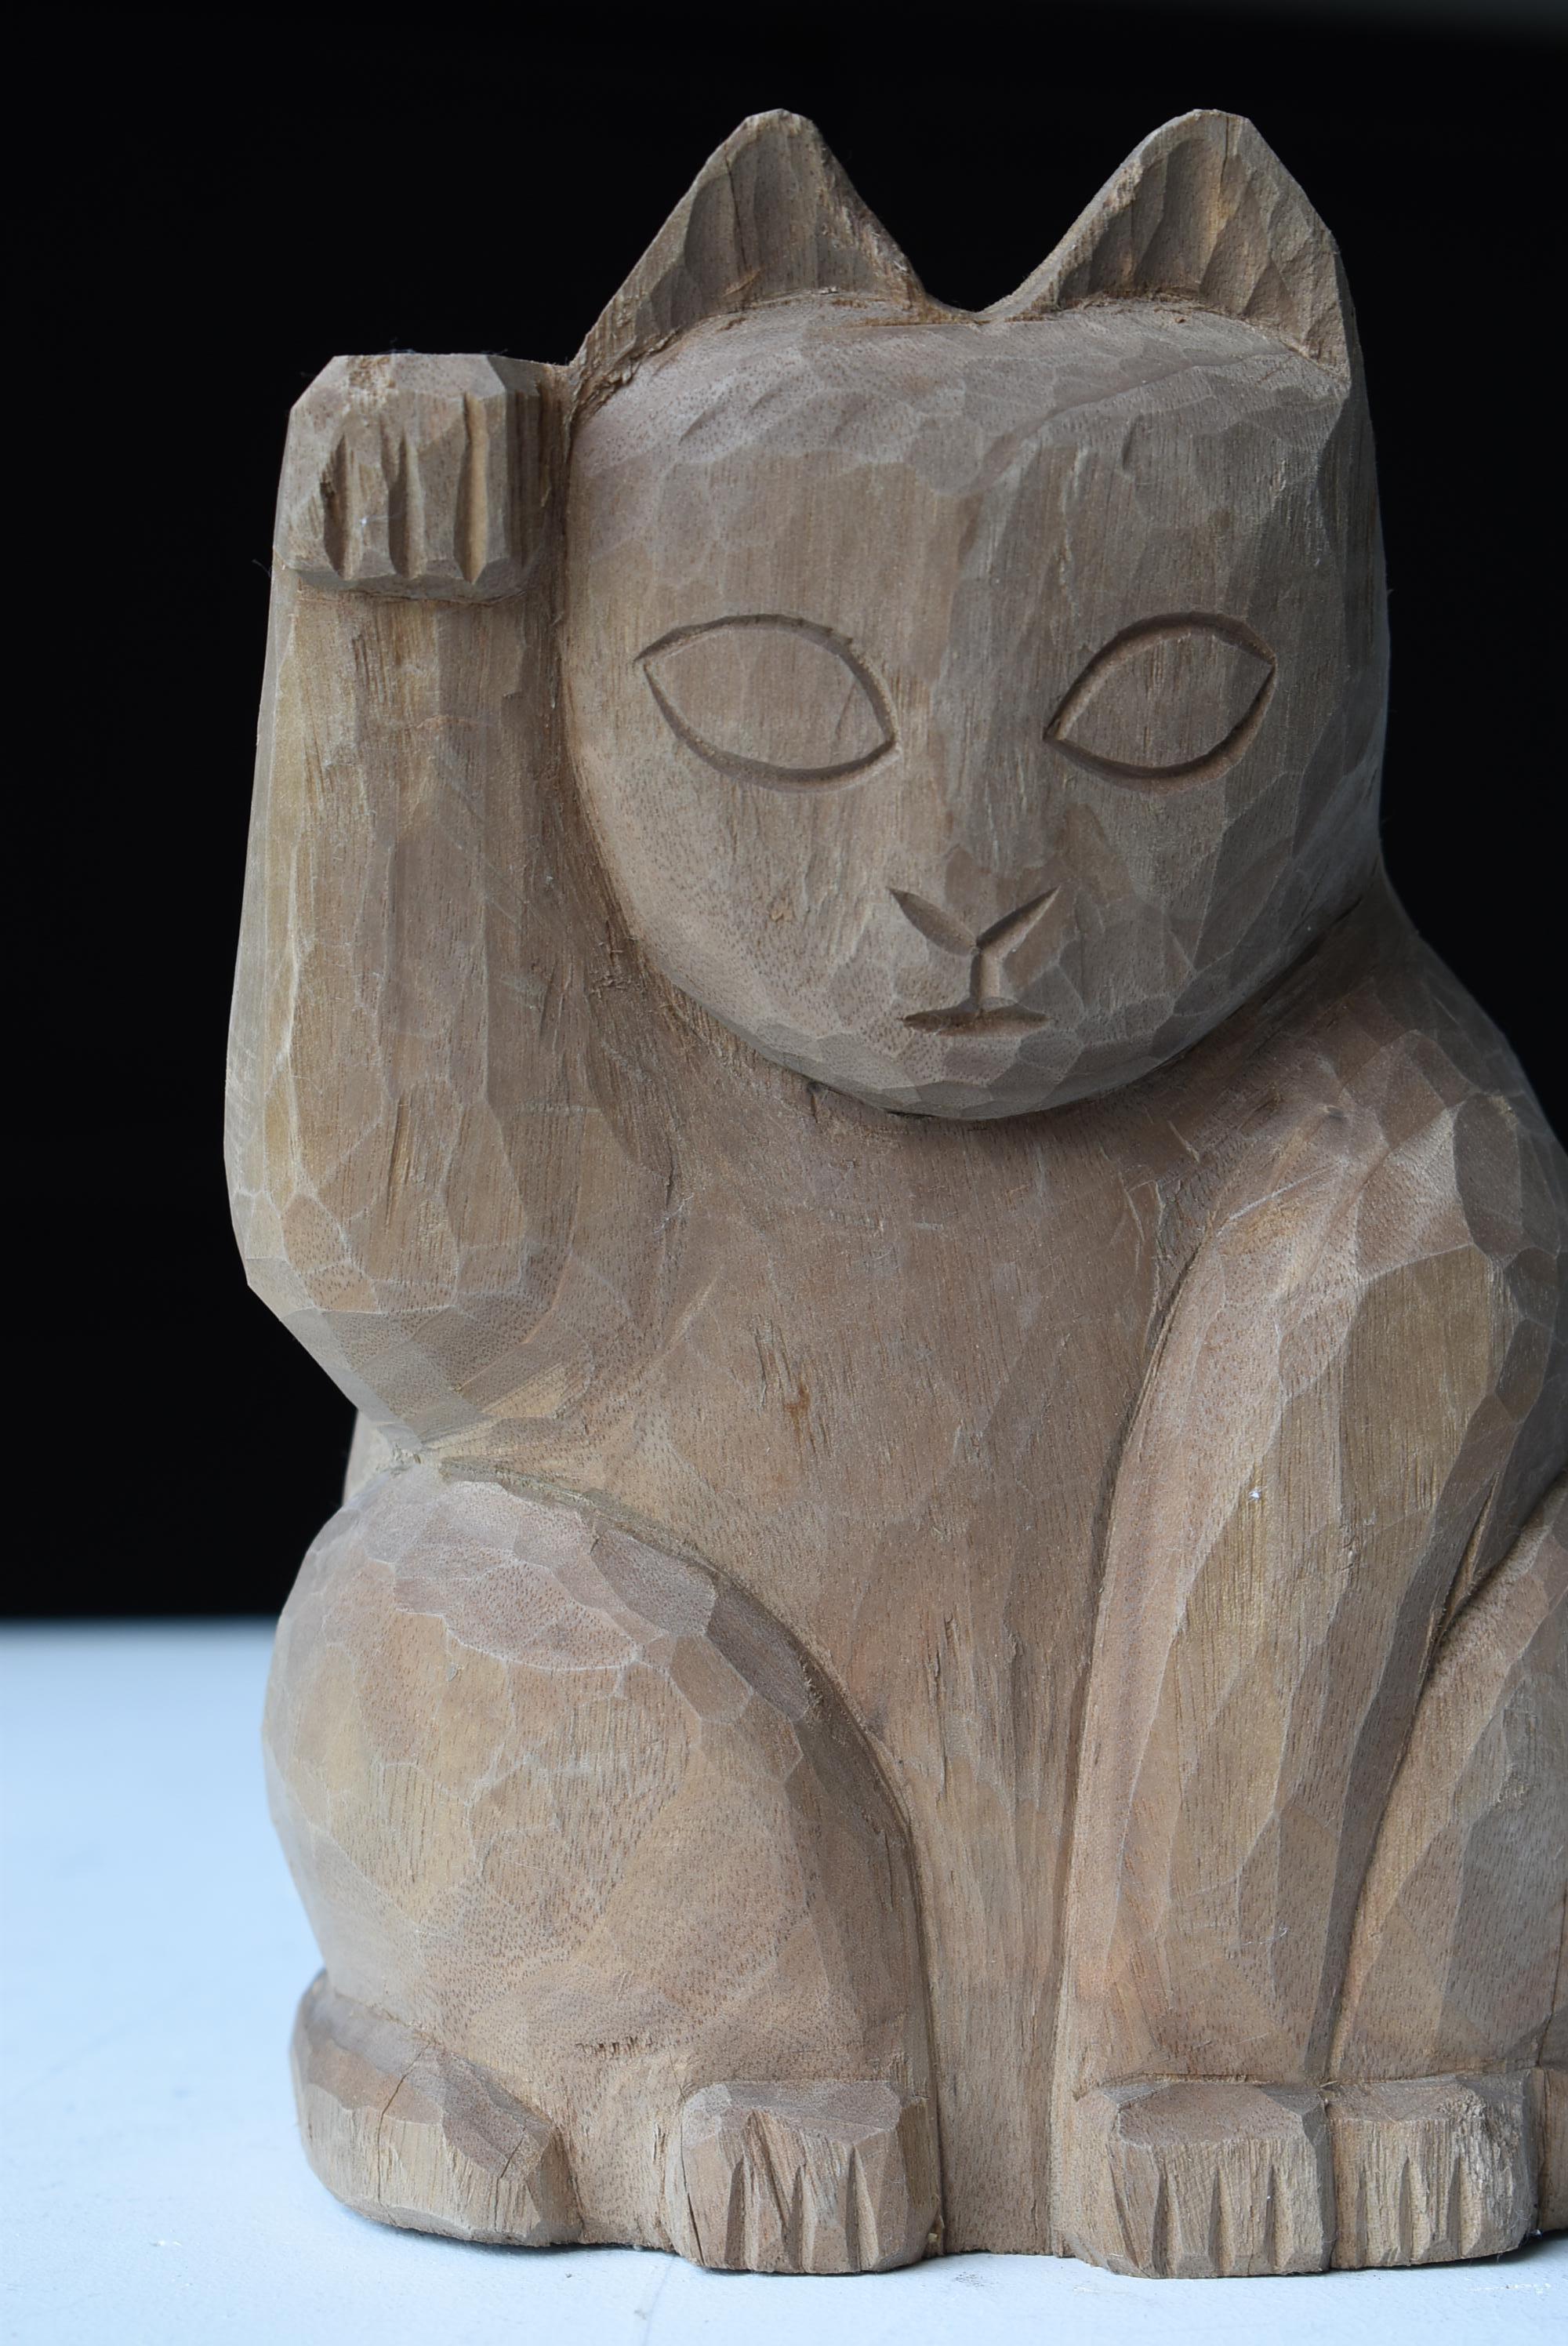 Showa Japanese Old Wood Carving Maneki Neko 1940s-1970s/Beckoning Cat Animal Sculpture